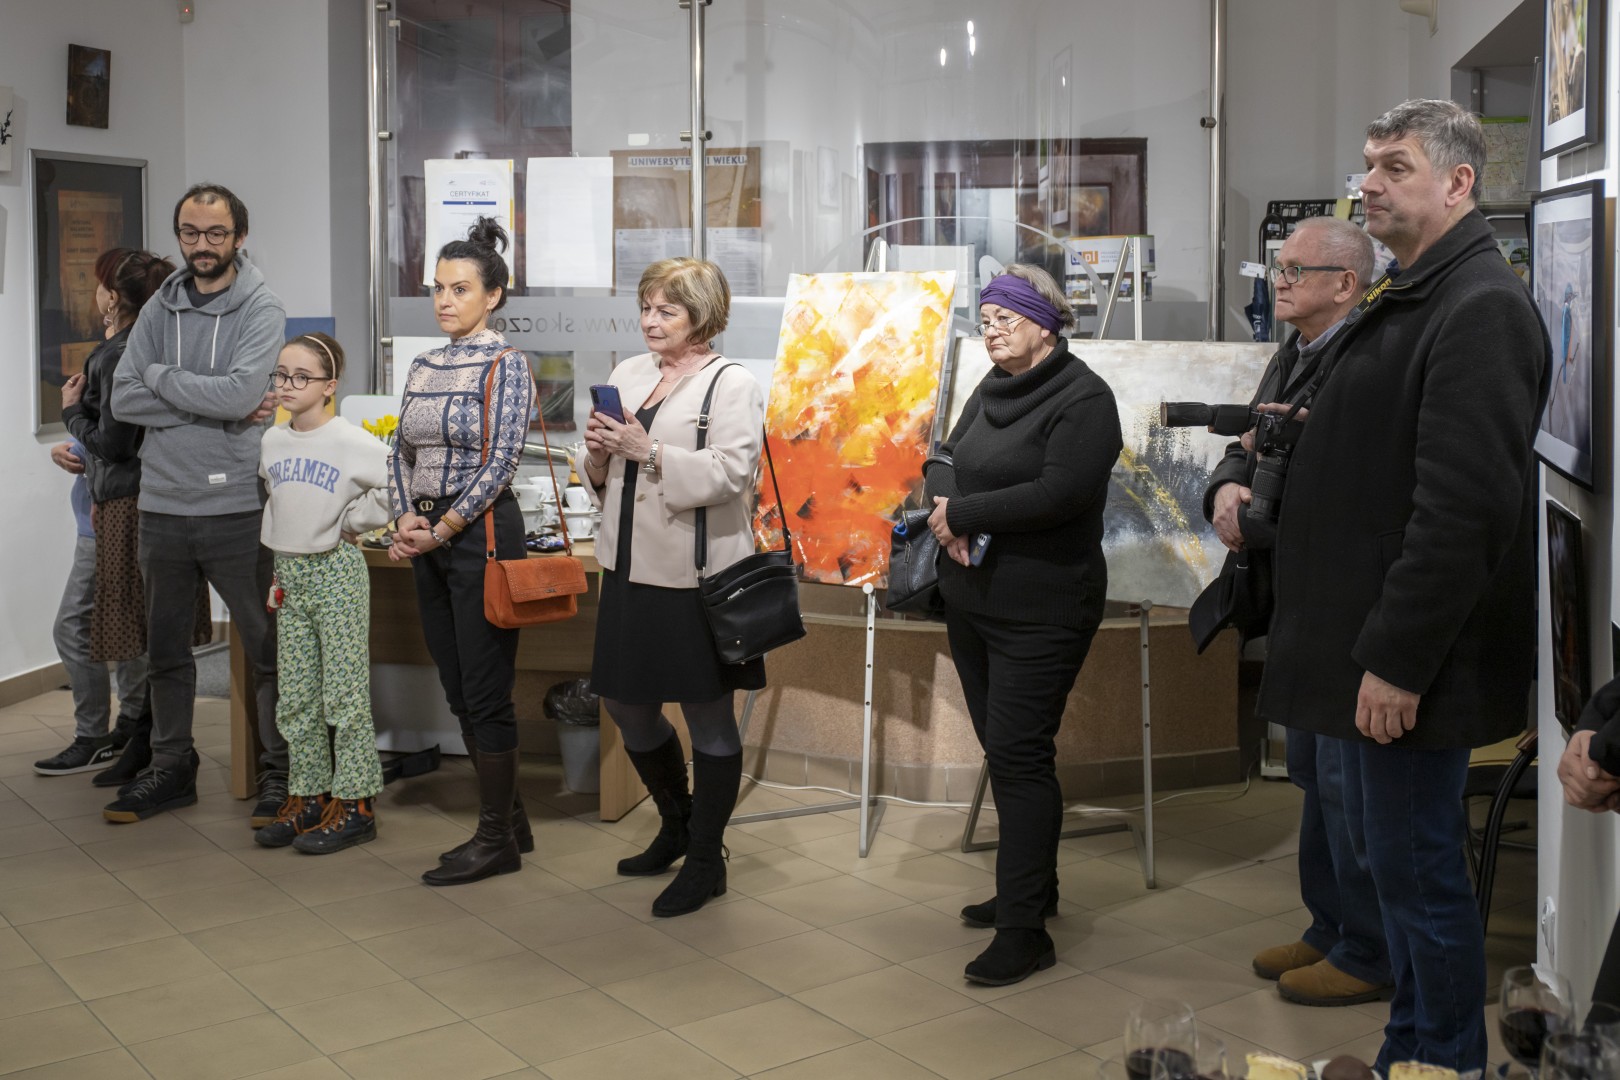 Wernisaż wystawy malarstwa i fotografii Anny Śnieżek/2023.03.03, Galeria ARTadres